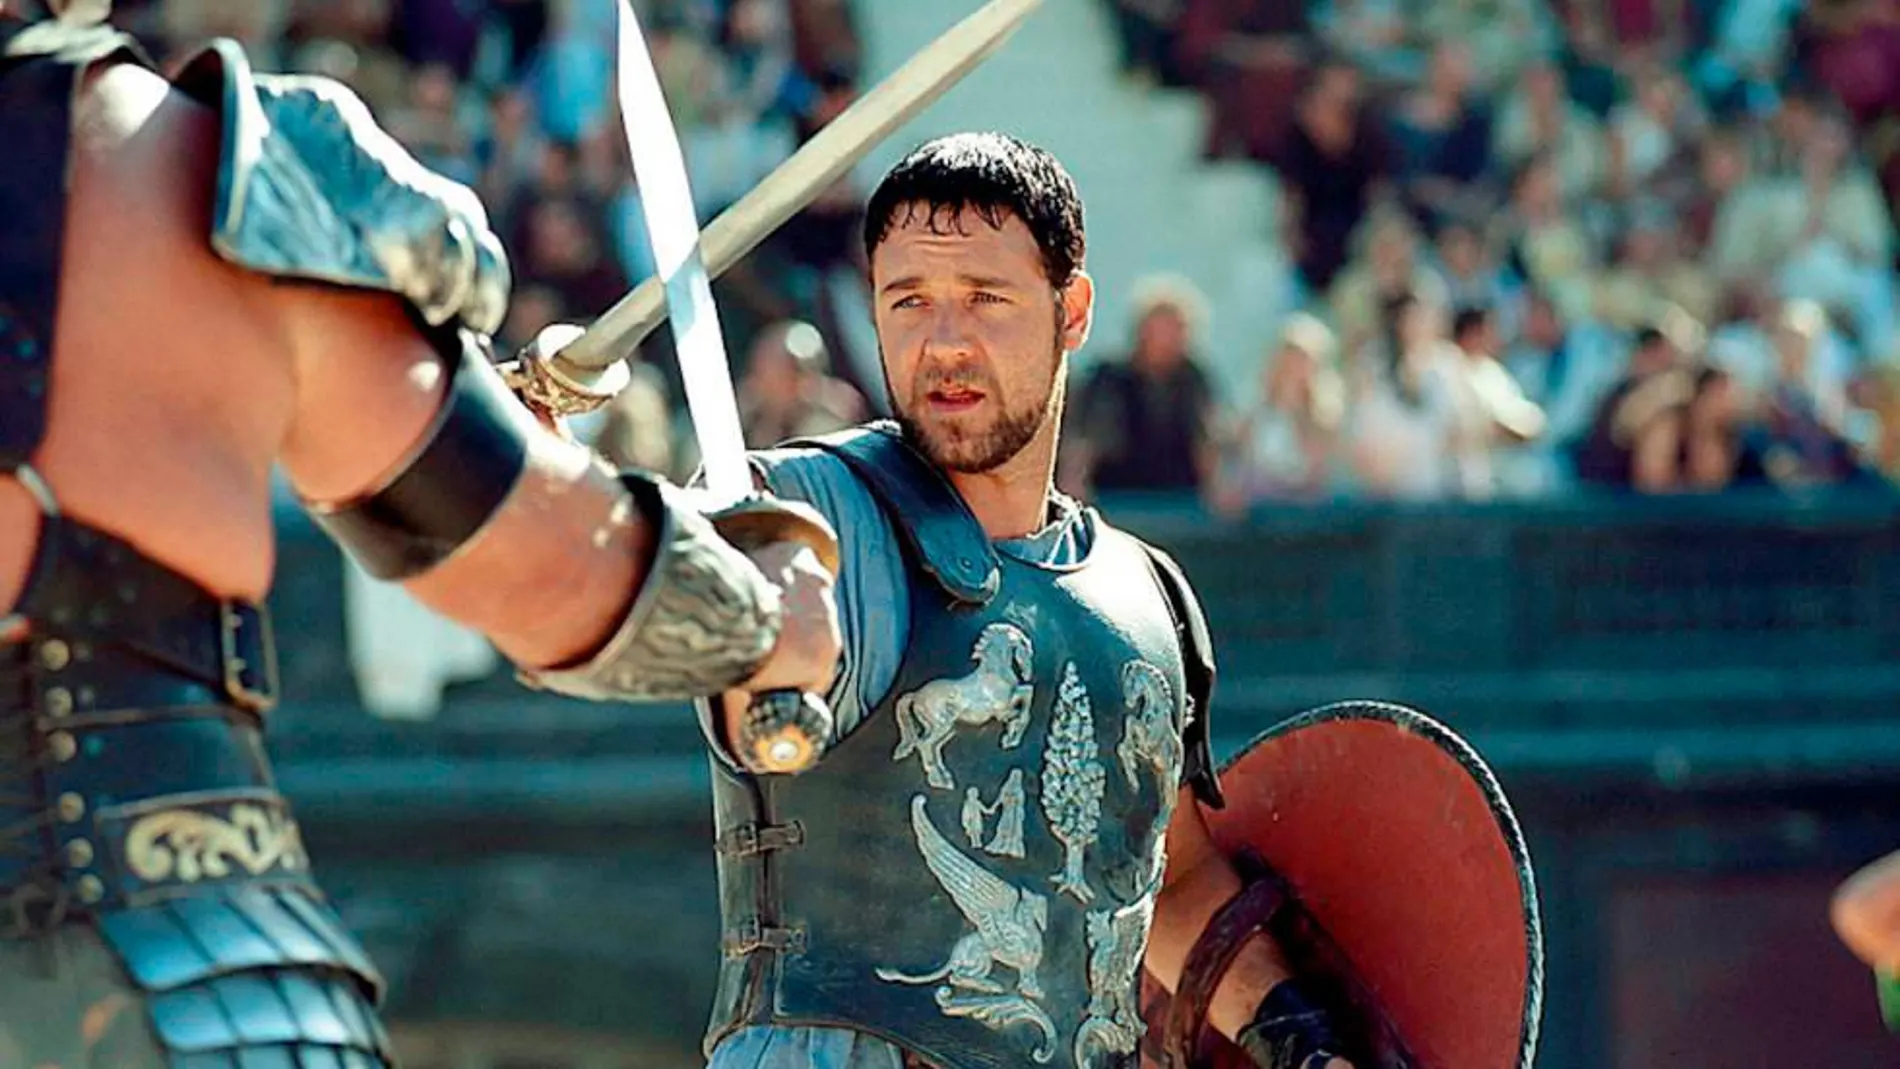 Peleas internas, heridos y una muerte: Así se forjó la leyenda de “Gladiator”